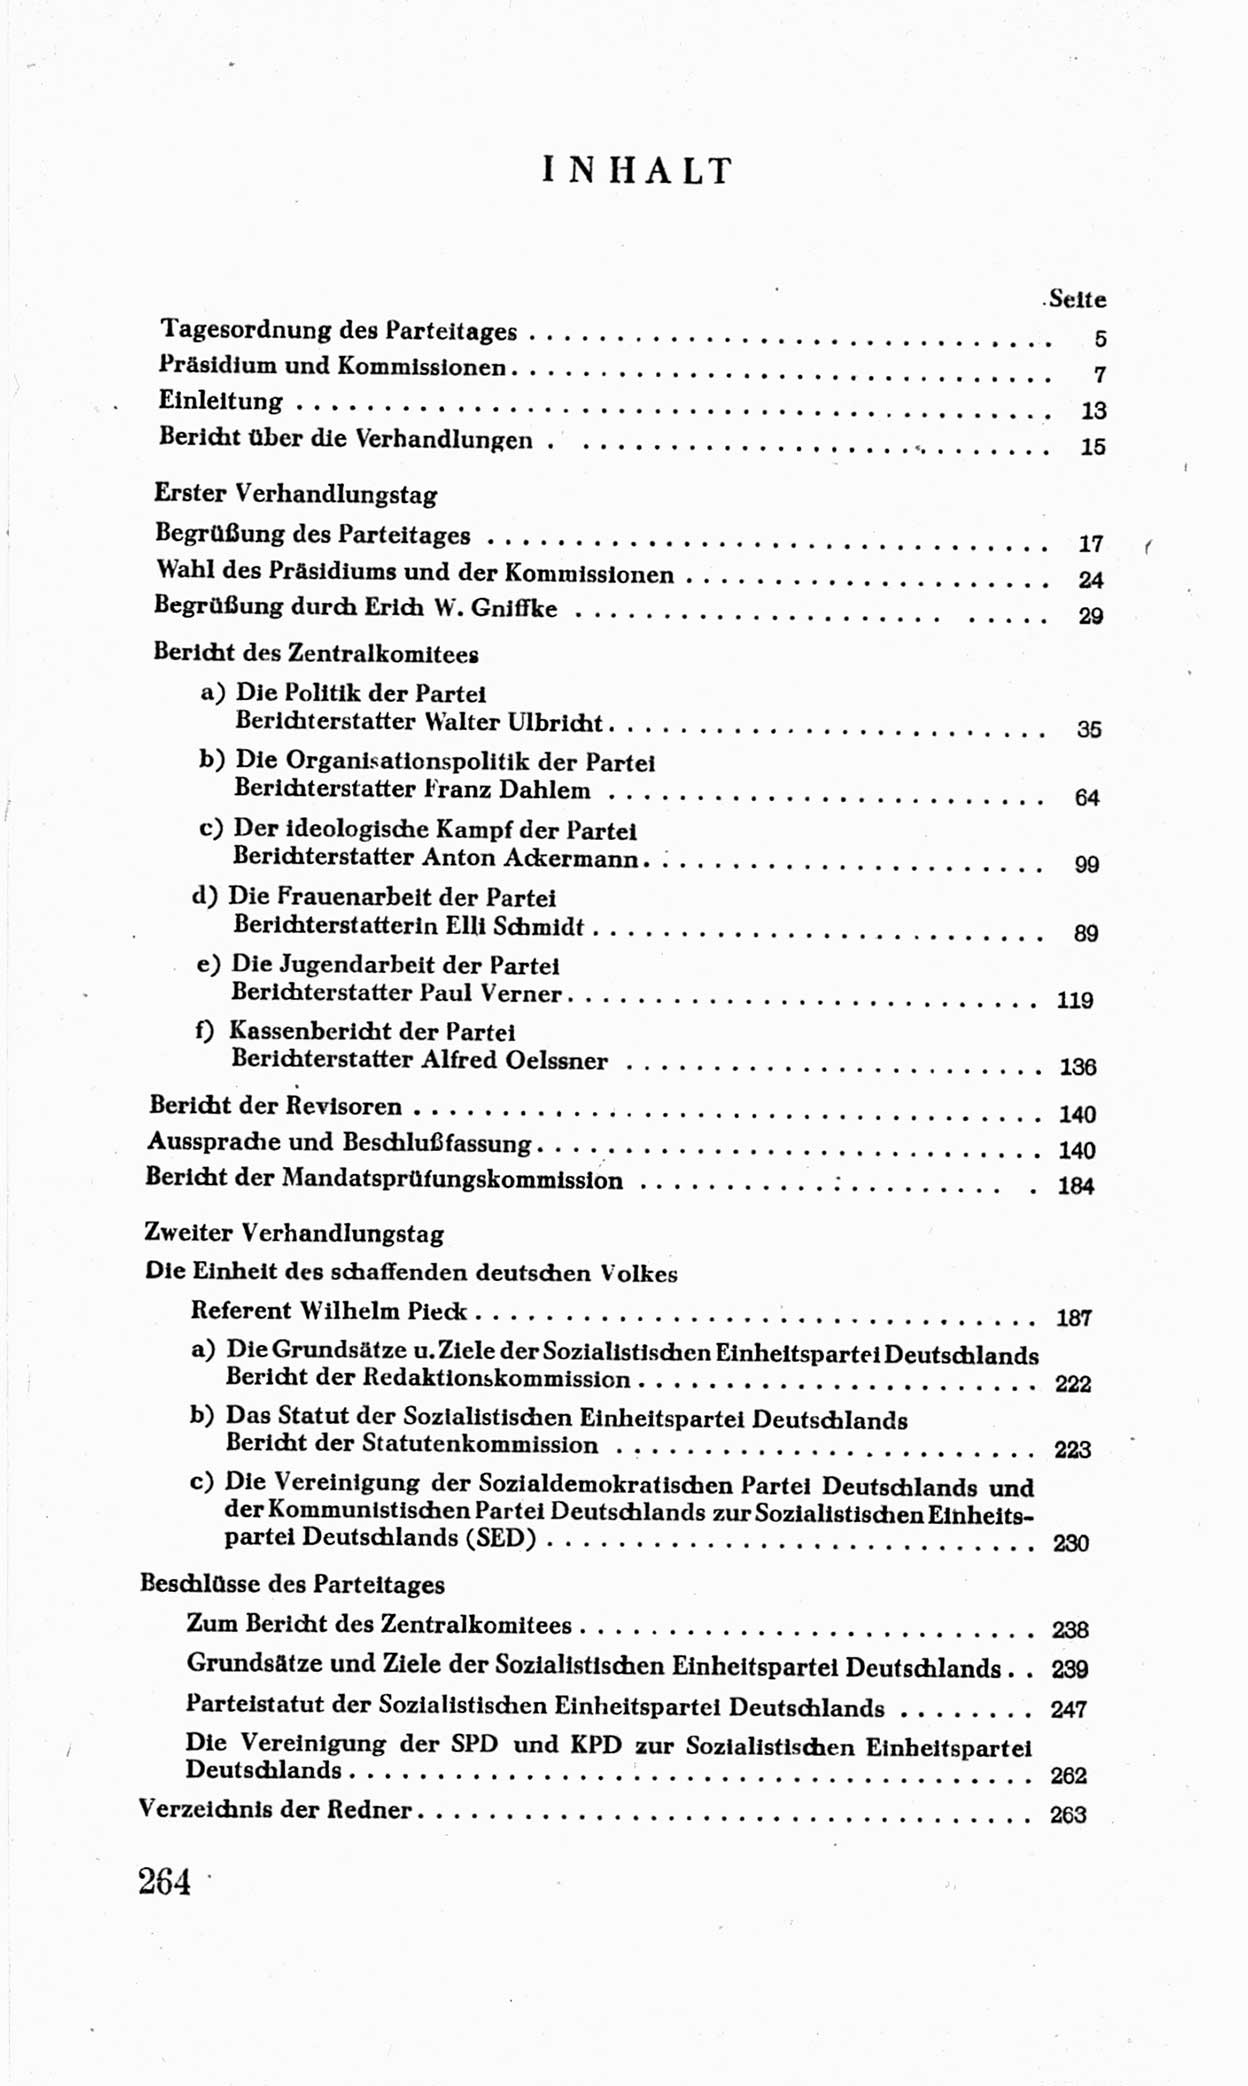 Bericht über die Verhandlungen des 15. Parteitages der Kommunistischen Partei Deutschlands (KPD) [Sowjetische Besatzungszone (SBZ) Deutschlands] am 19. und 20. April 1946 in Berlin, Seite 264 (Ber. Verh. 15. PT KPD SBZ Dtl. 1946, S. 264)